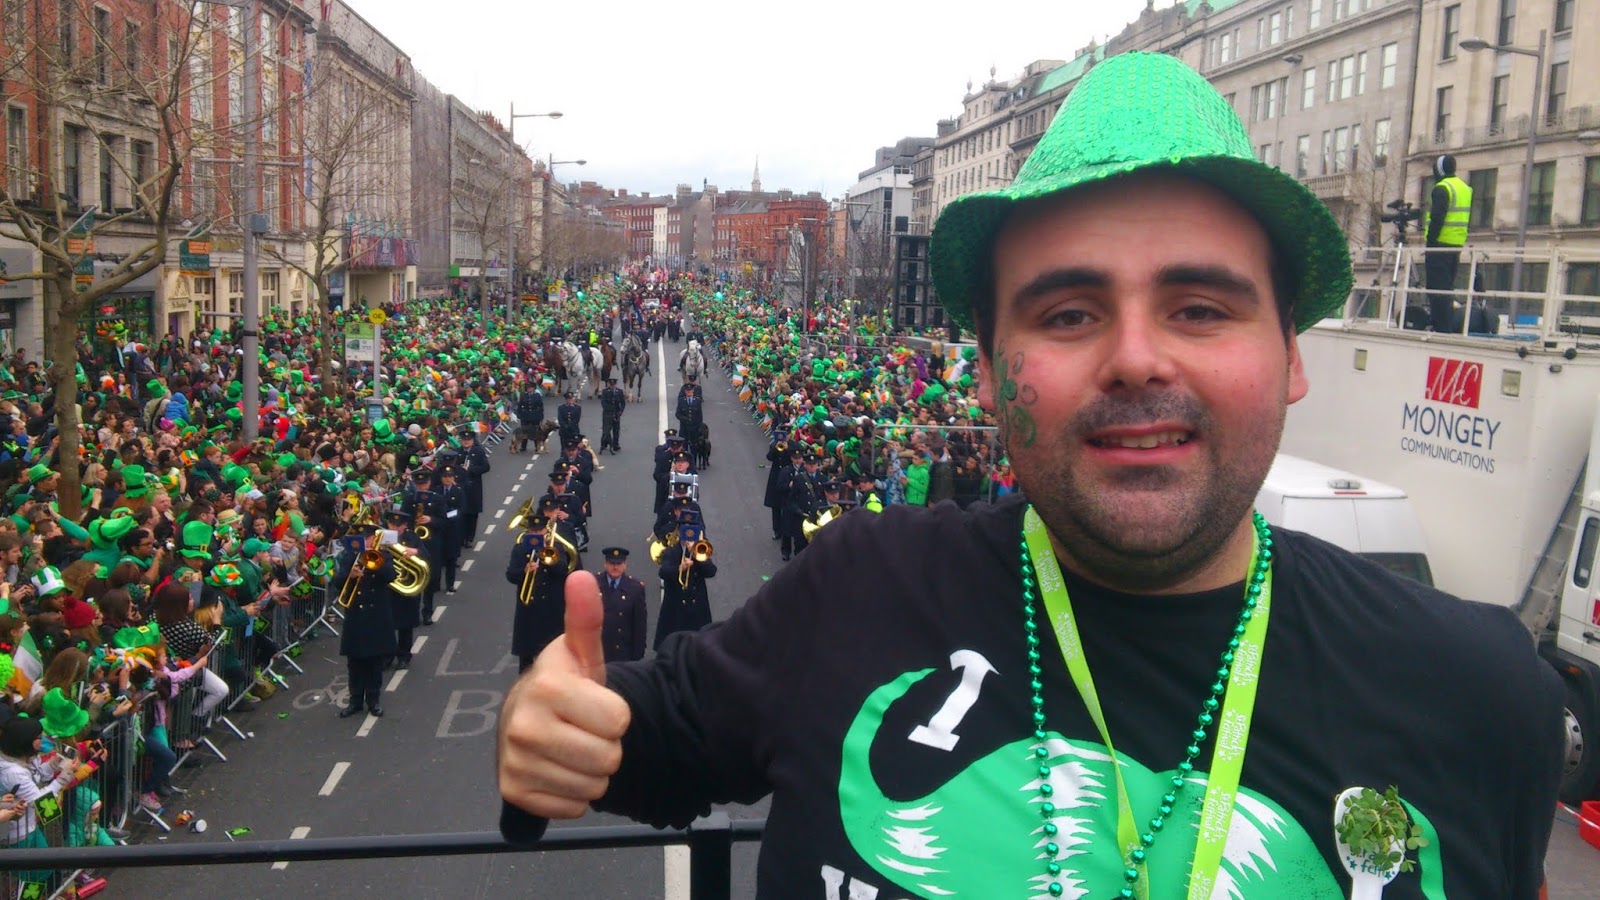 Protagonista del desfile del día de San Patricio en Dublín